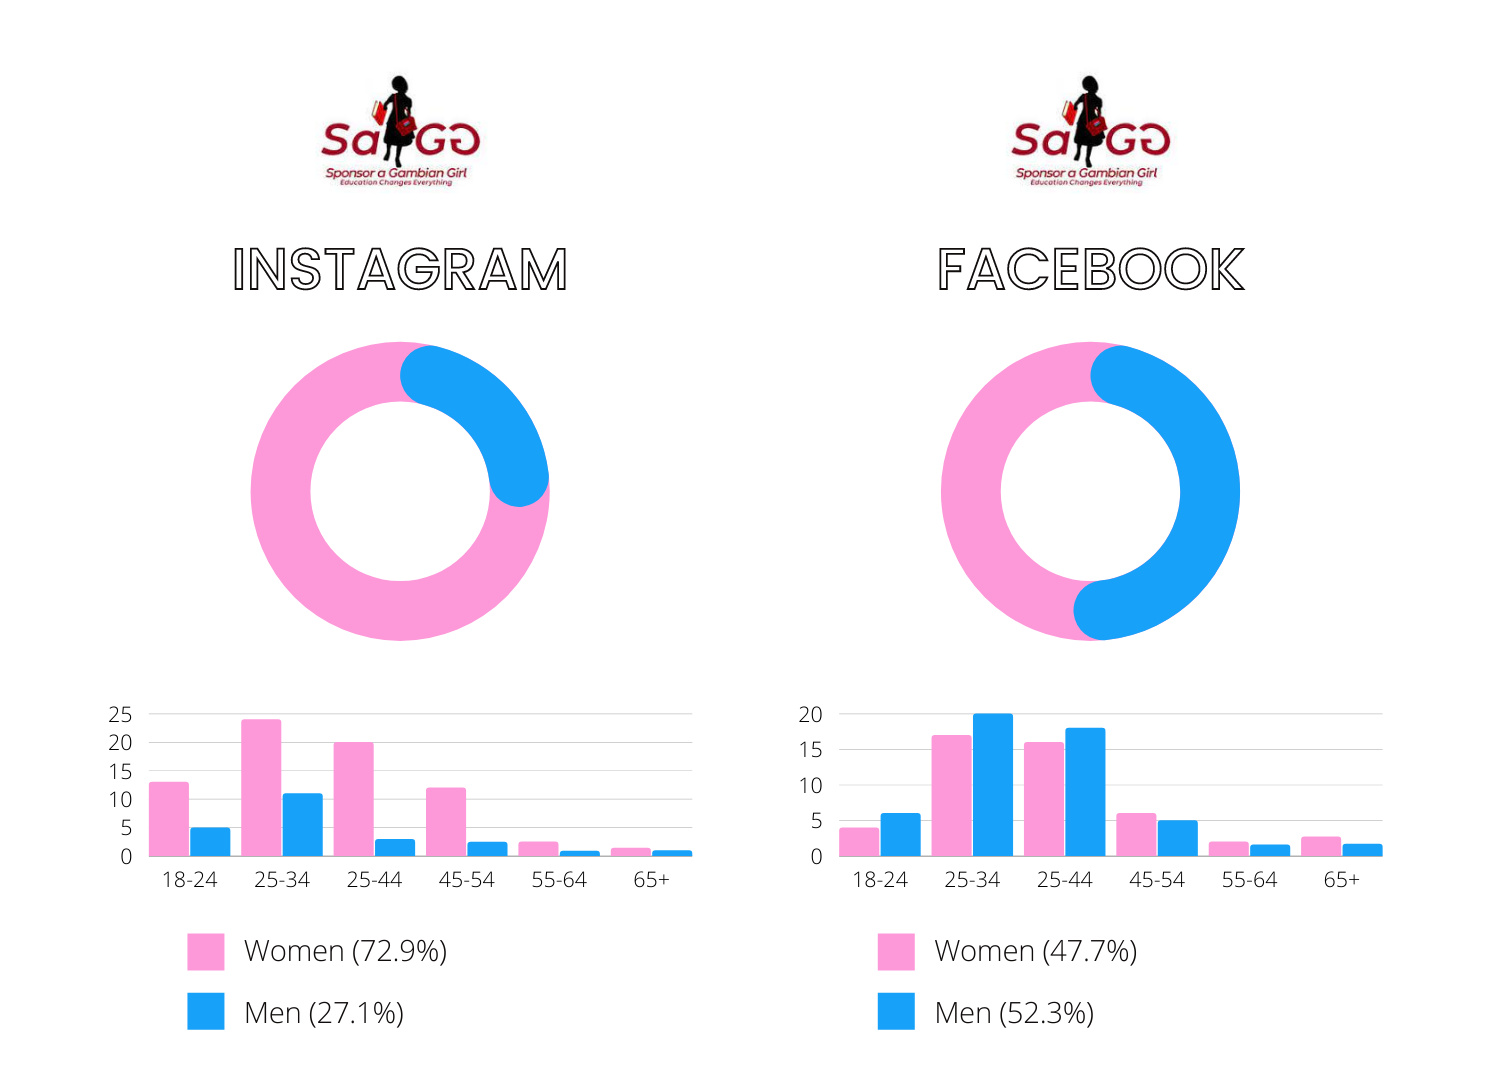 SaGG Age and Gender Instagram and Facebook